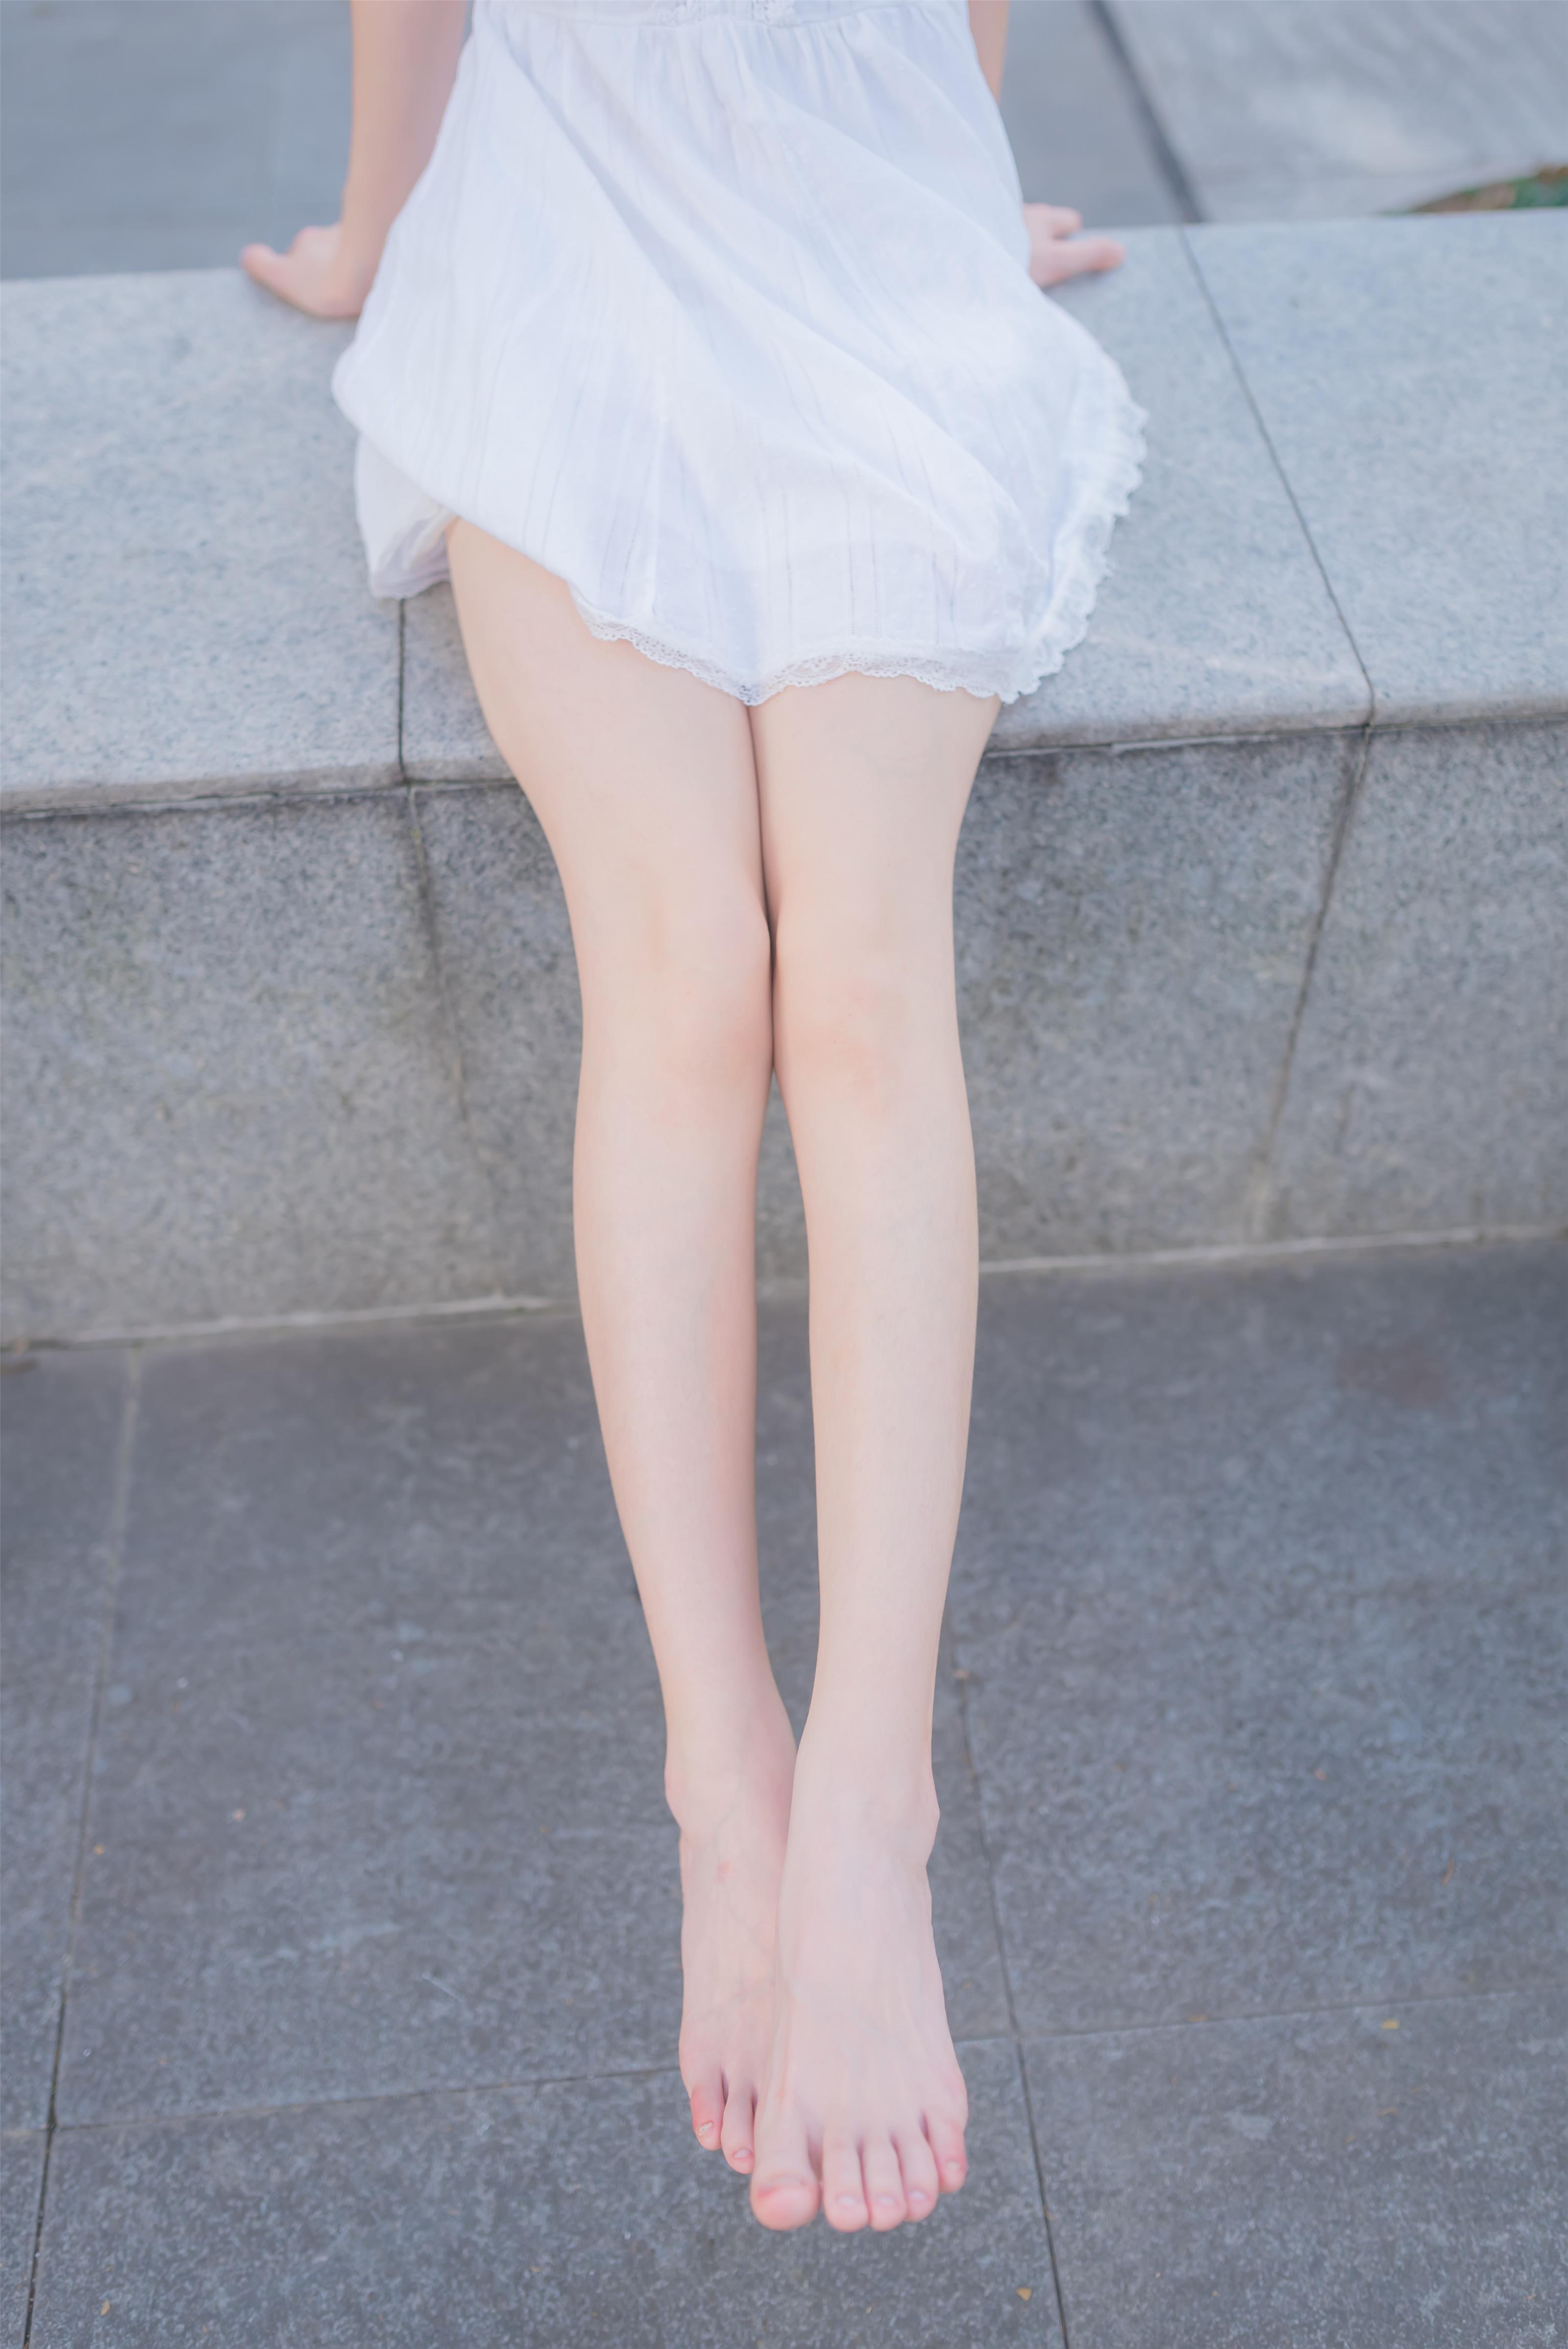 [风之领域]NO.056 性感小萝莉 白色吊带蕾丝连衣裙加修长美腿玉足私房写真集,